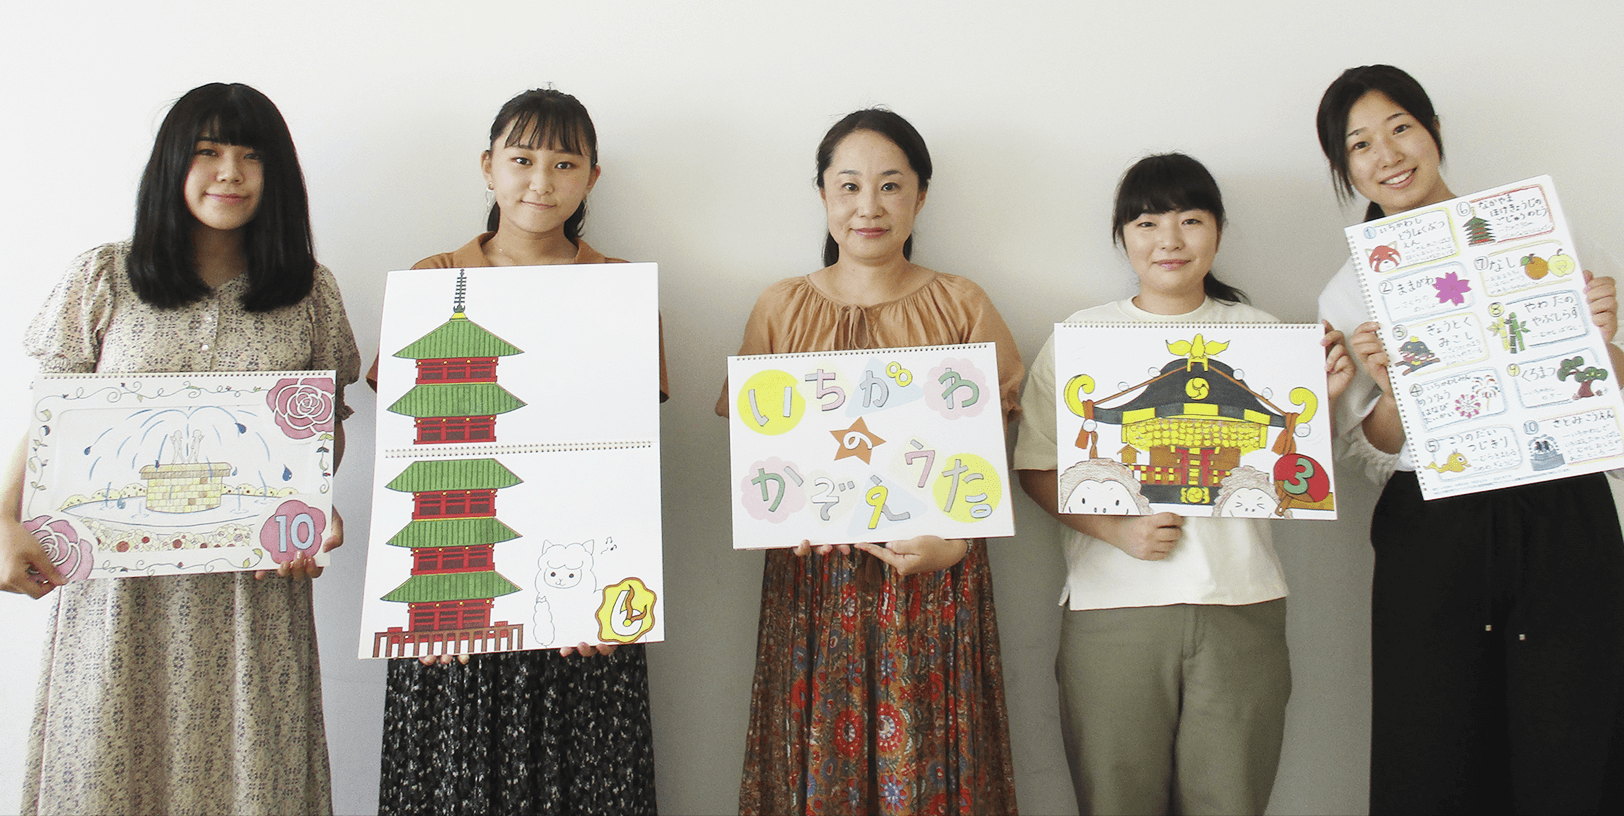 「いちかわ かぞえうた」プロジェクトに協力した和洋女子大学の学生と中村先生(中央)